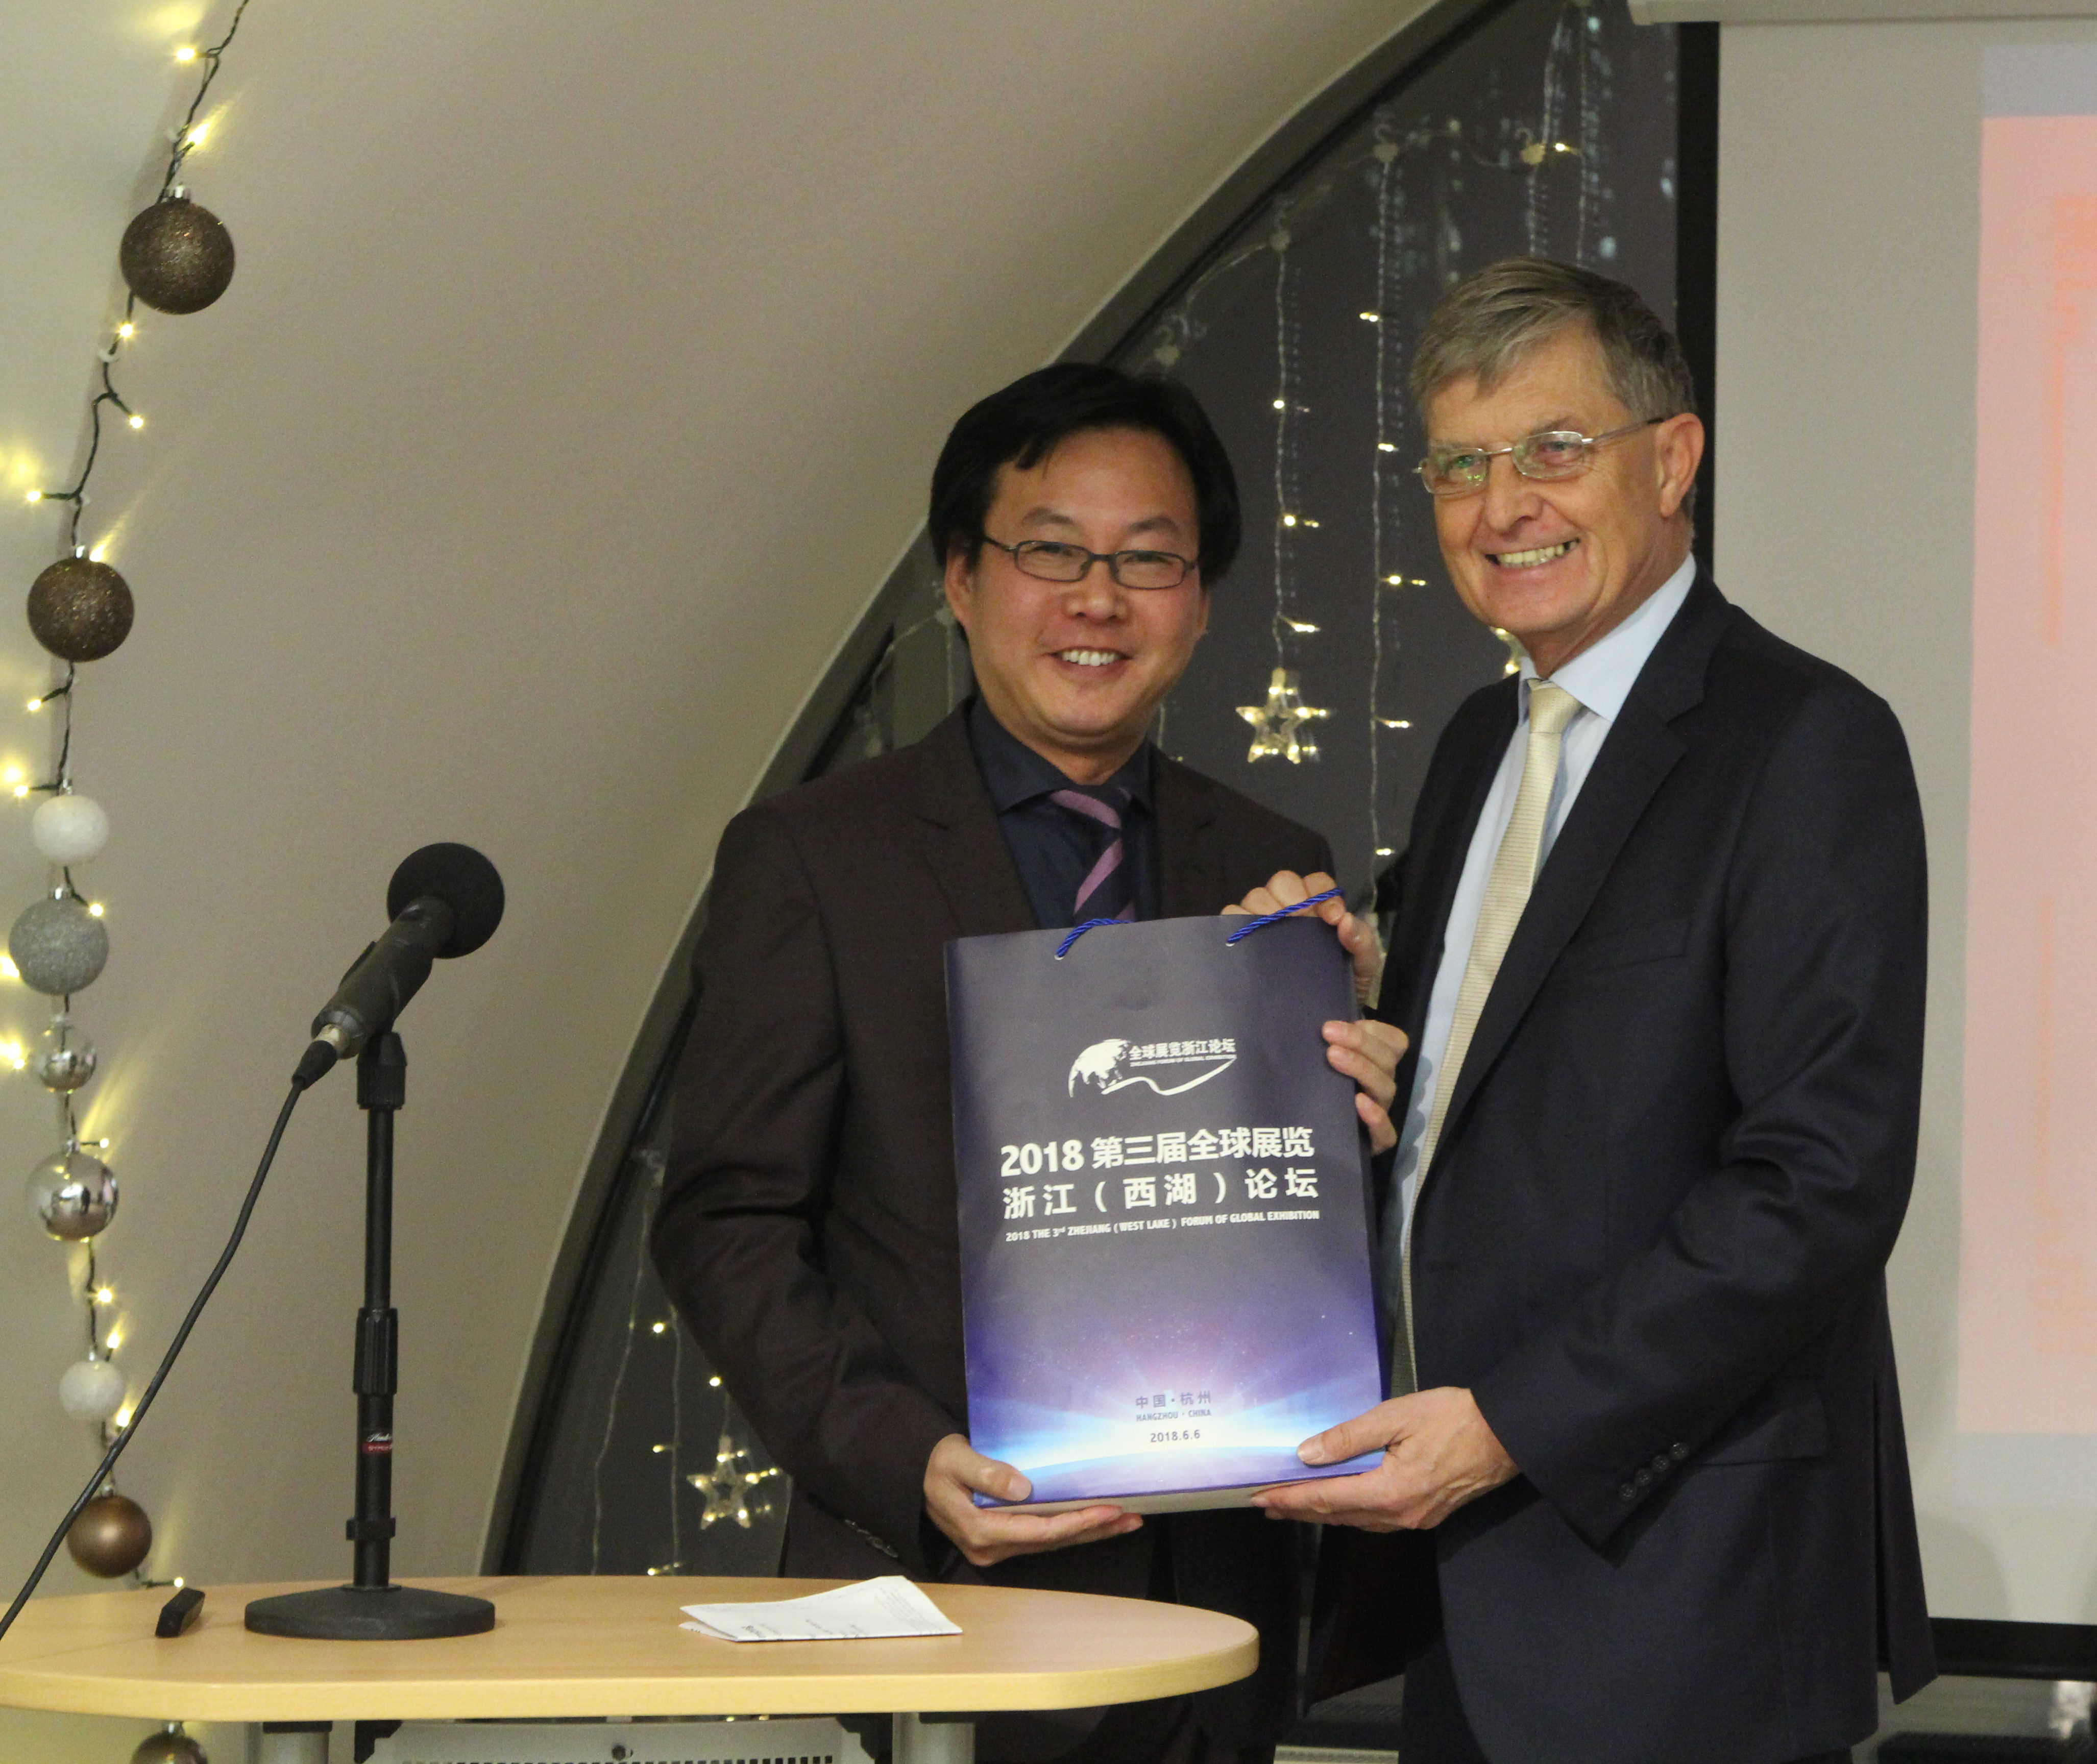 Dr. Borchmann überreicht Chefredakteur HU Xudong „traditionelle deutsche Medizin“ aus Hessen und aus Baden